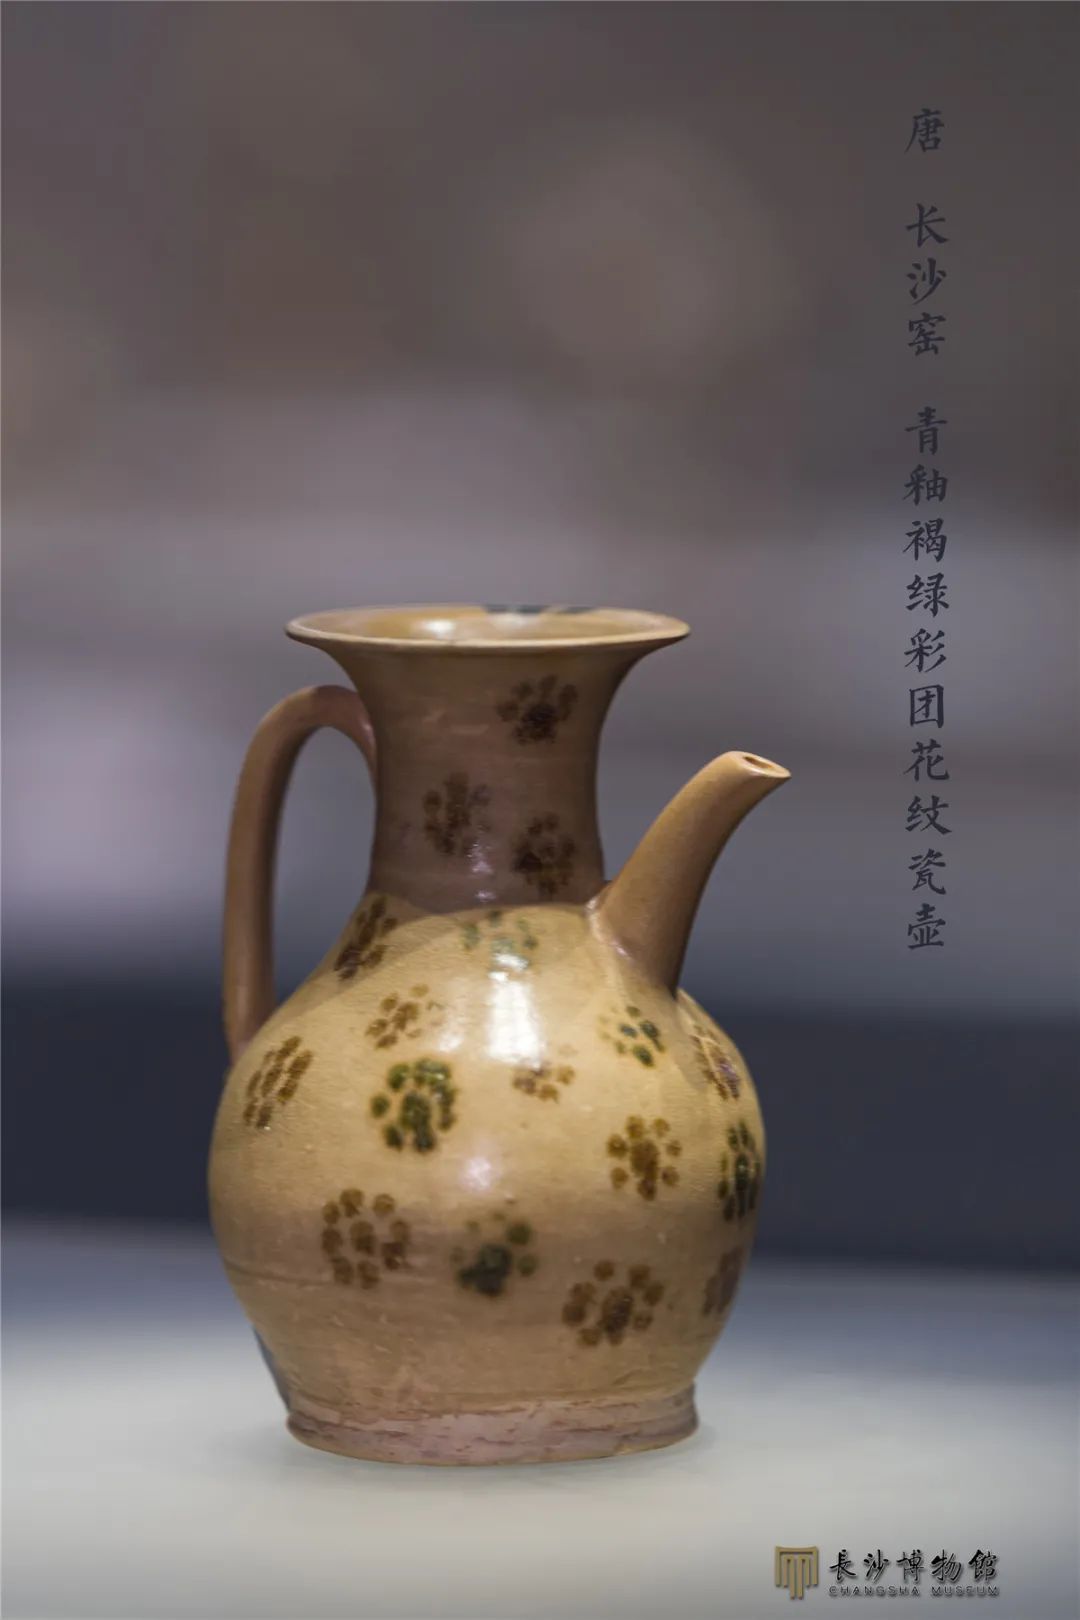 青釉褐绿彩团花纹瓷壶 唐（618-907年） 长沙铜官窑遗址出土 长沙市博物馆藏